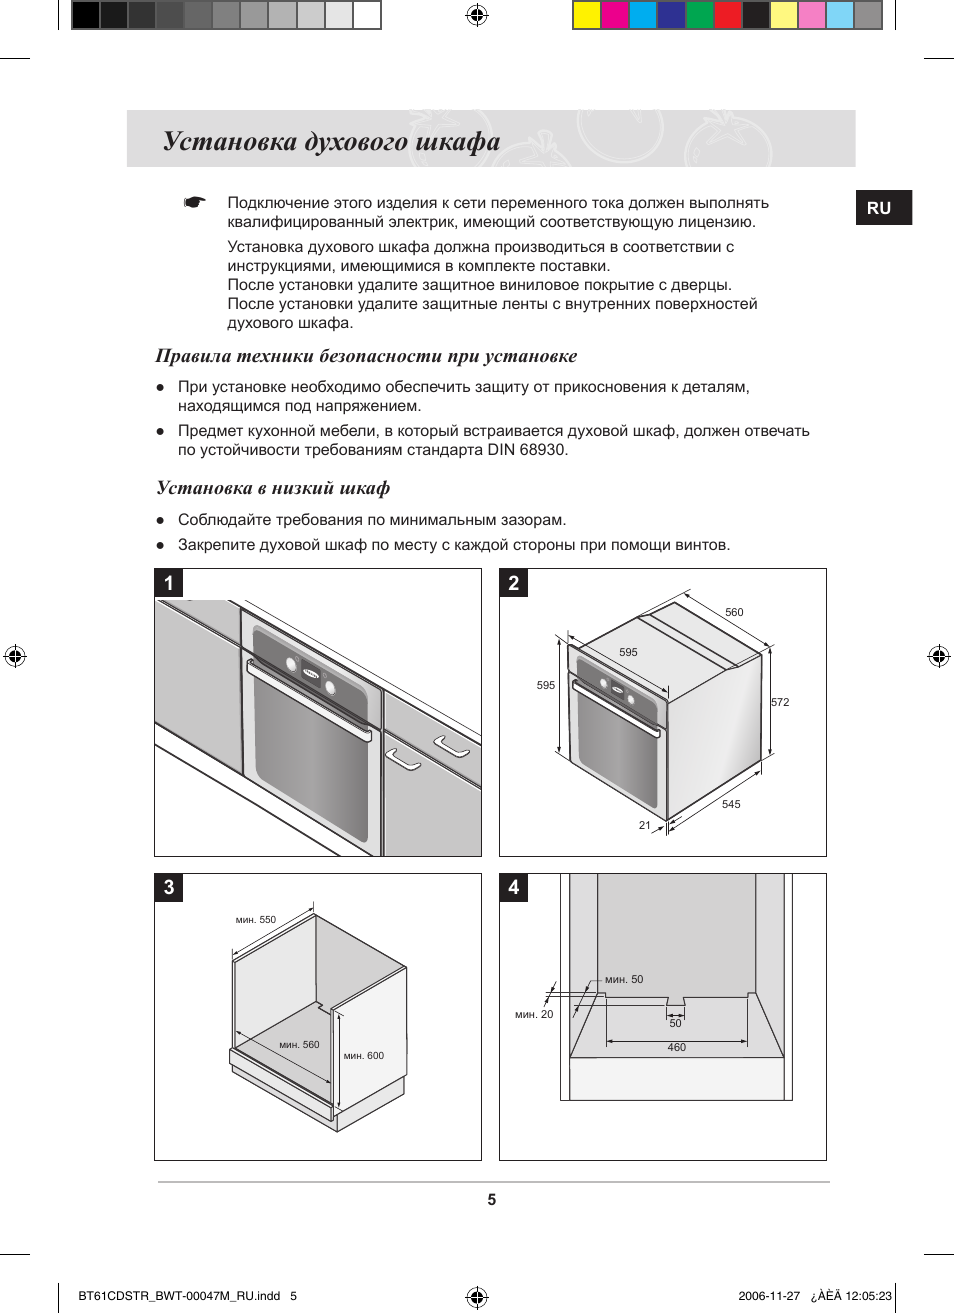 Bosch 543 духовой шкаф инструкция по установке